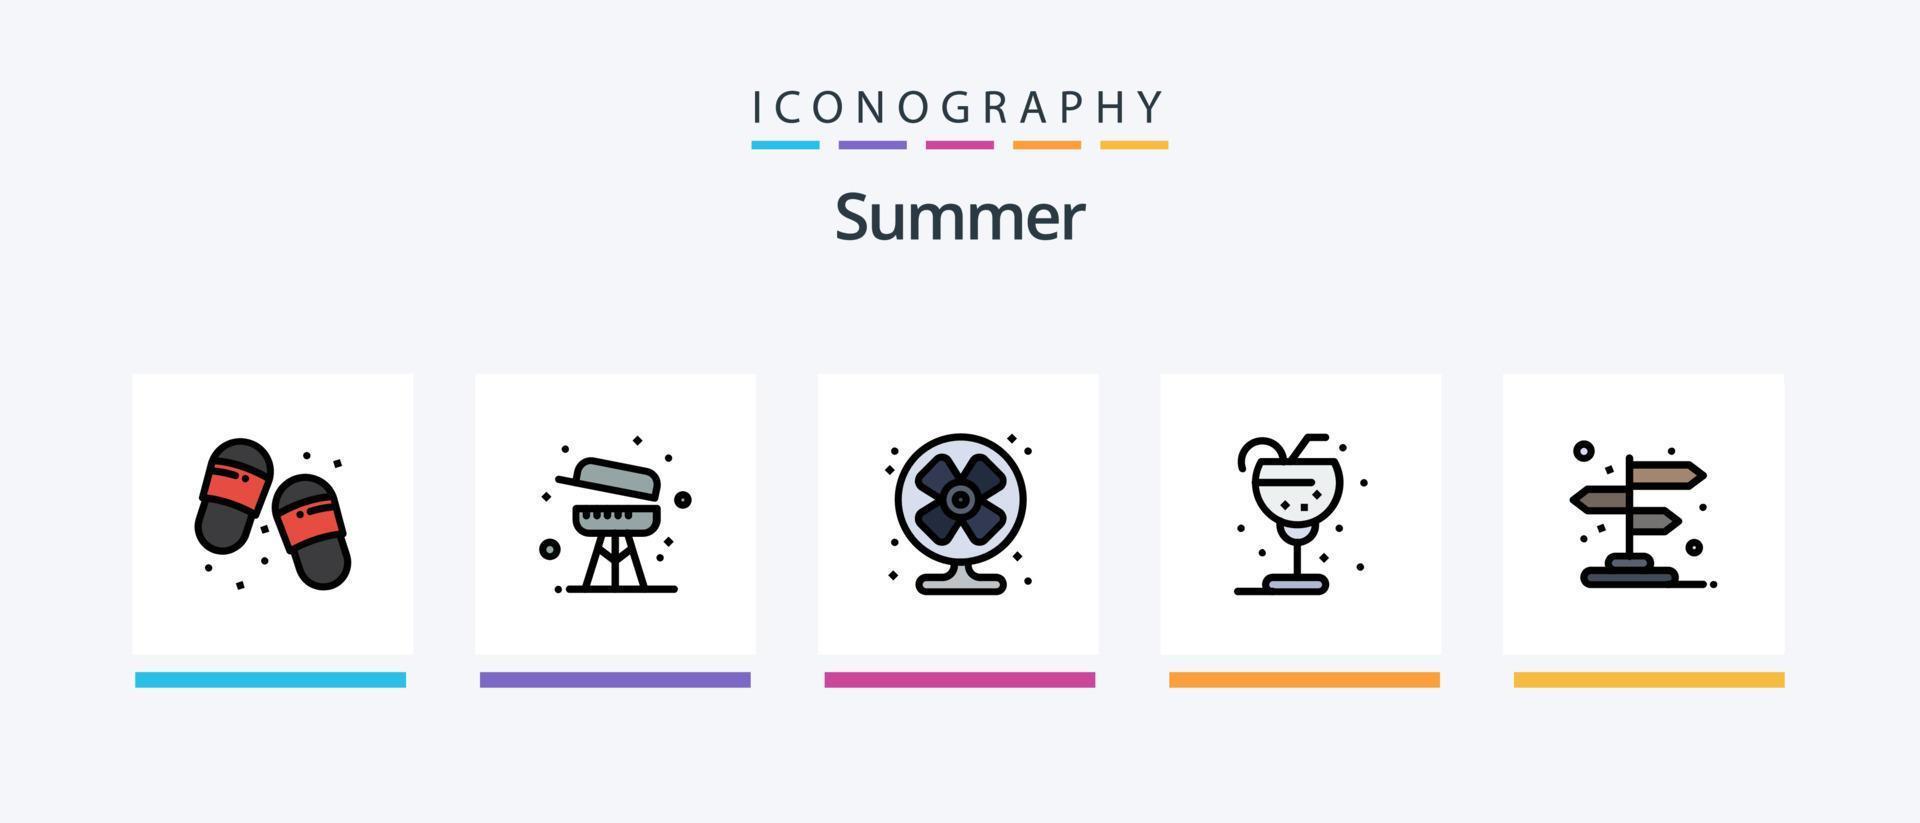 la línea de verano llenó el paquete de 5 iconos, incluido el verano. escafandra autónoma. verano. buceo. estrella. diseño de iconos creativos vector